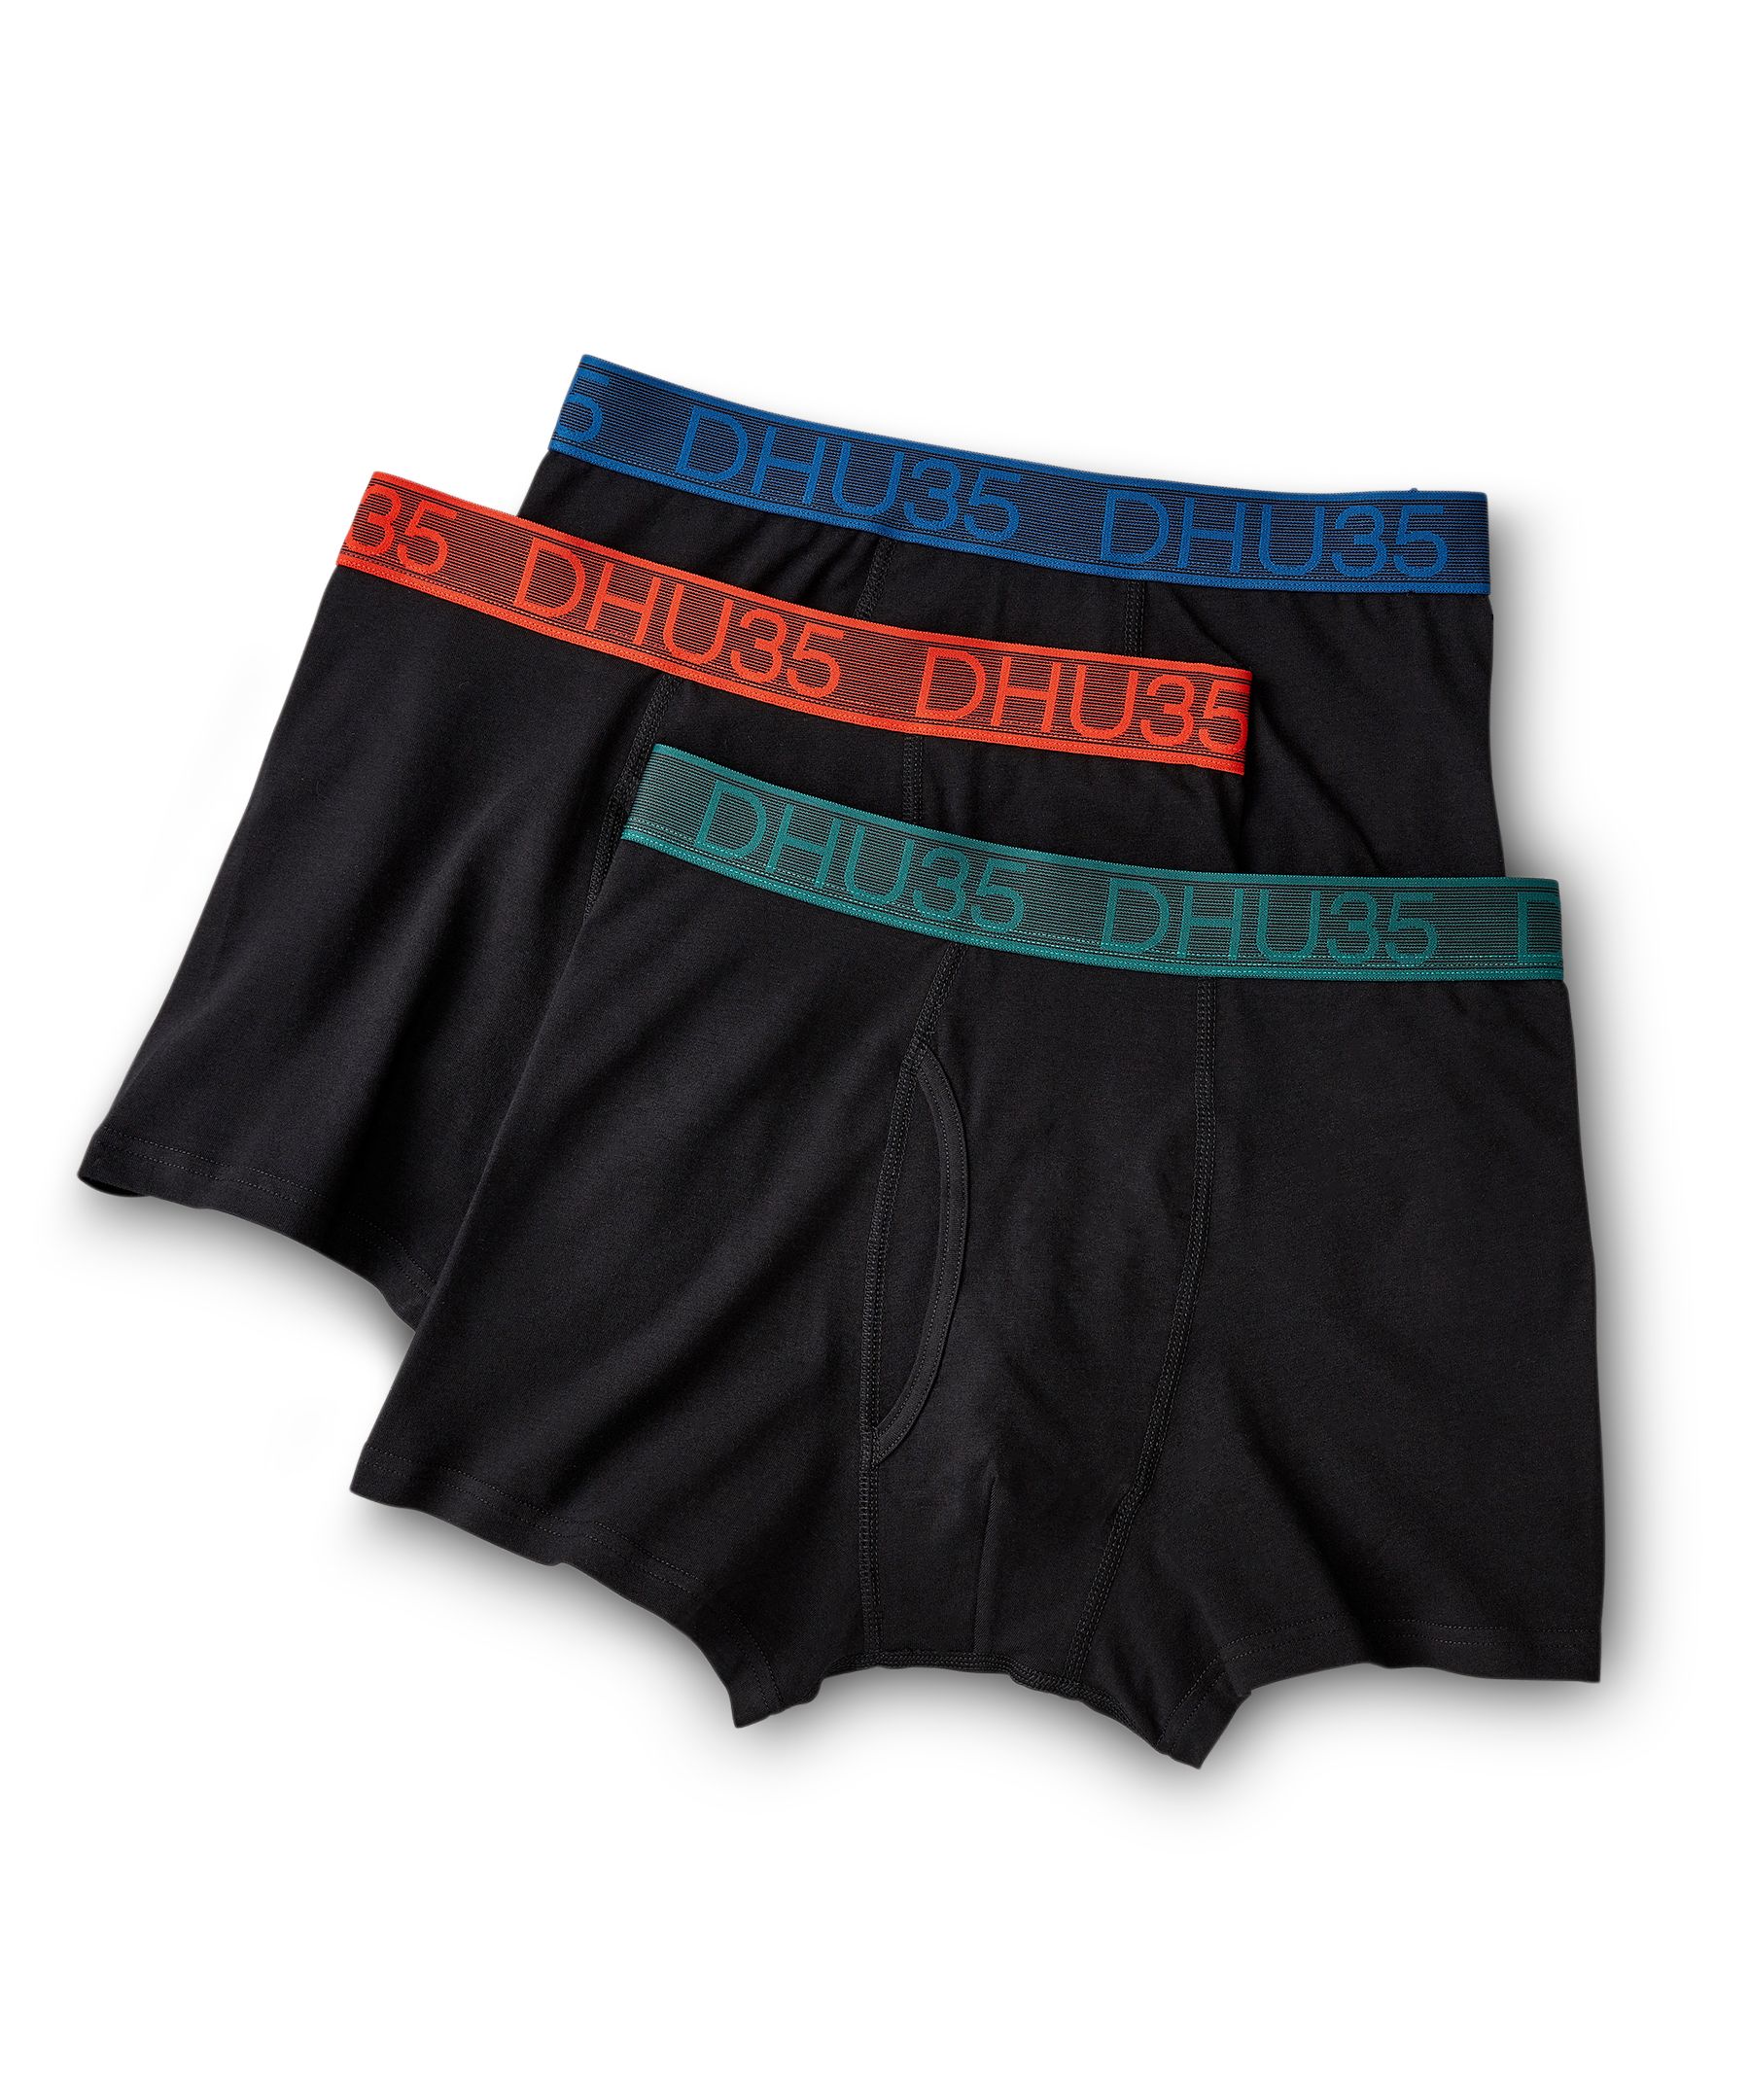 Denver Hayes Men's 3 Pack Fashion Cotton Stretch Elastic Trunk Briefs  Underwear